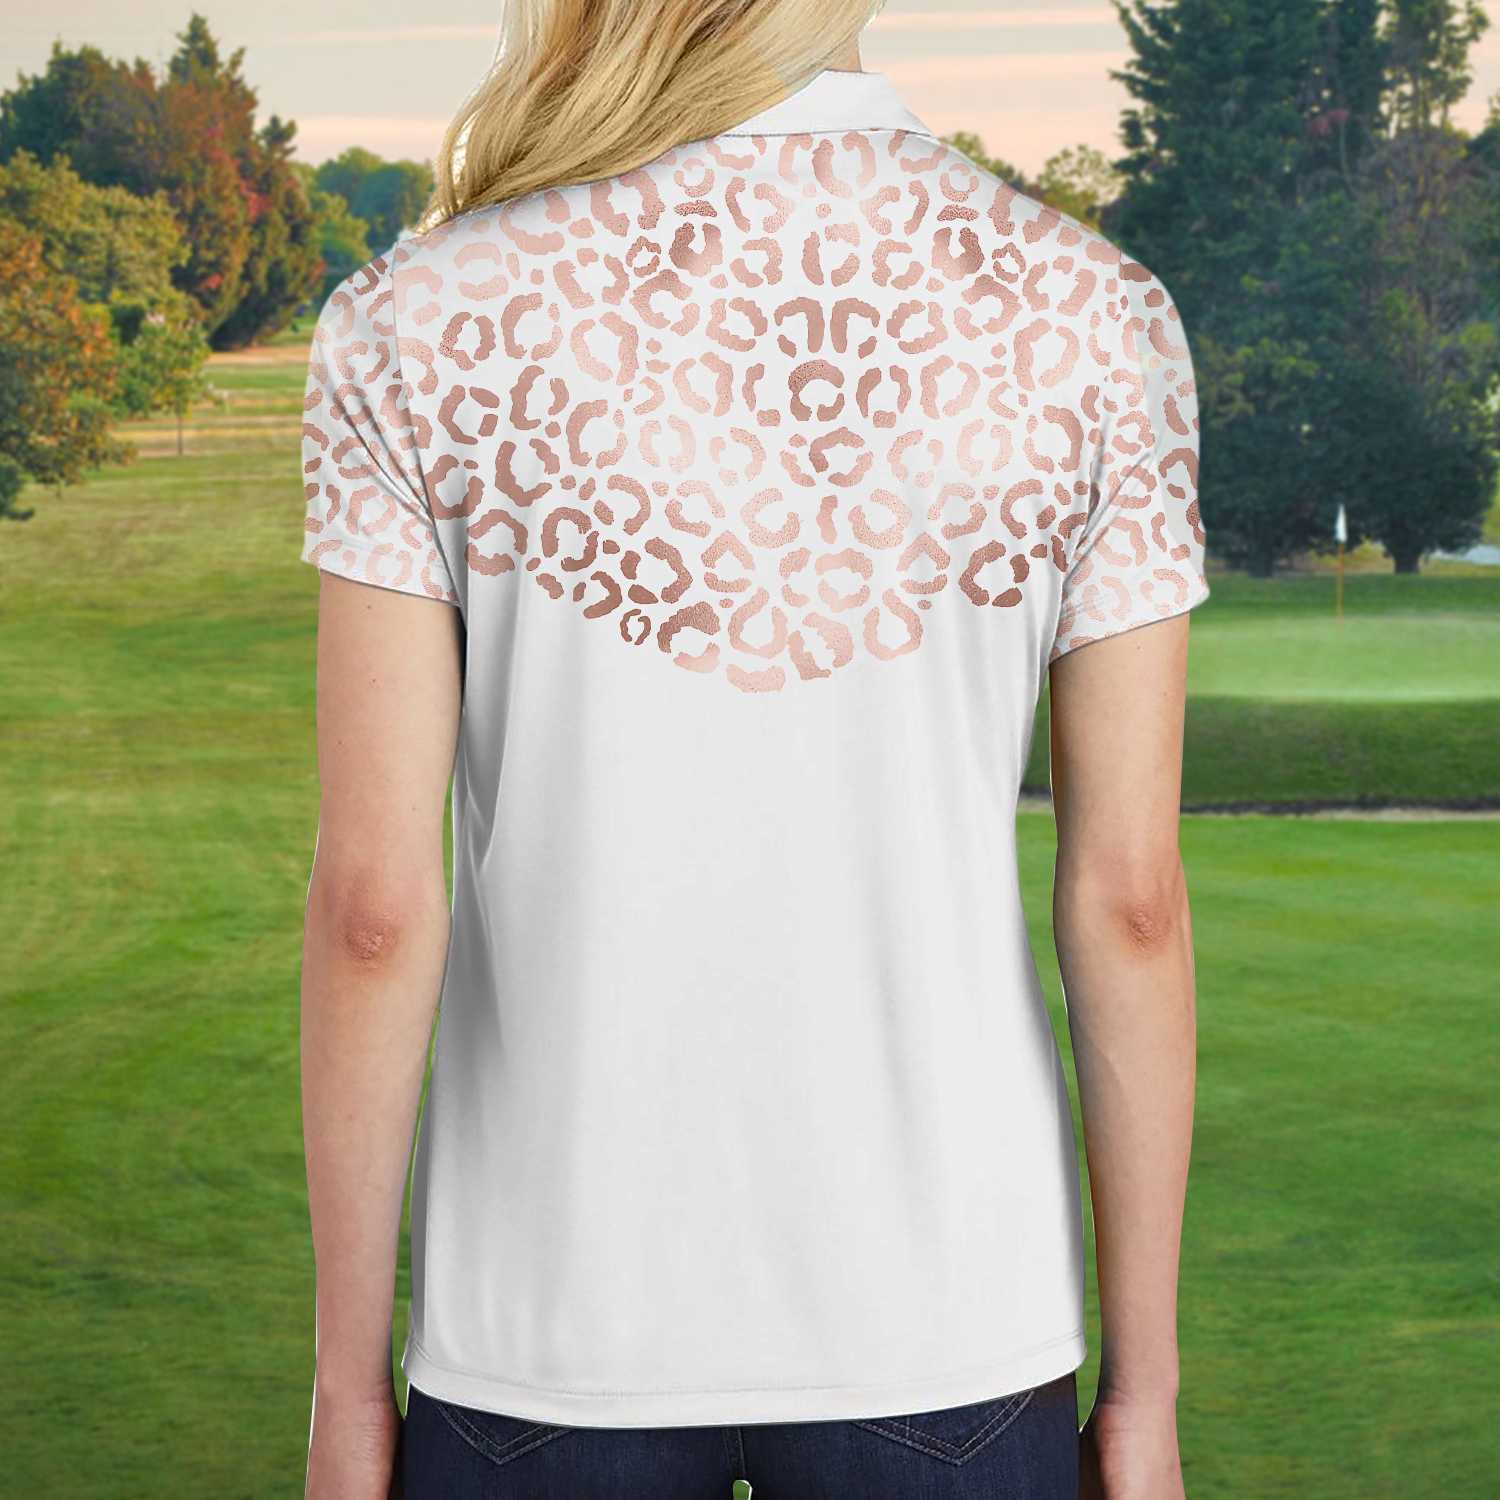 Rose Gold Leopard Pattern Shirt Short Sleeve Women Polo Shirt Coolspod